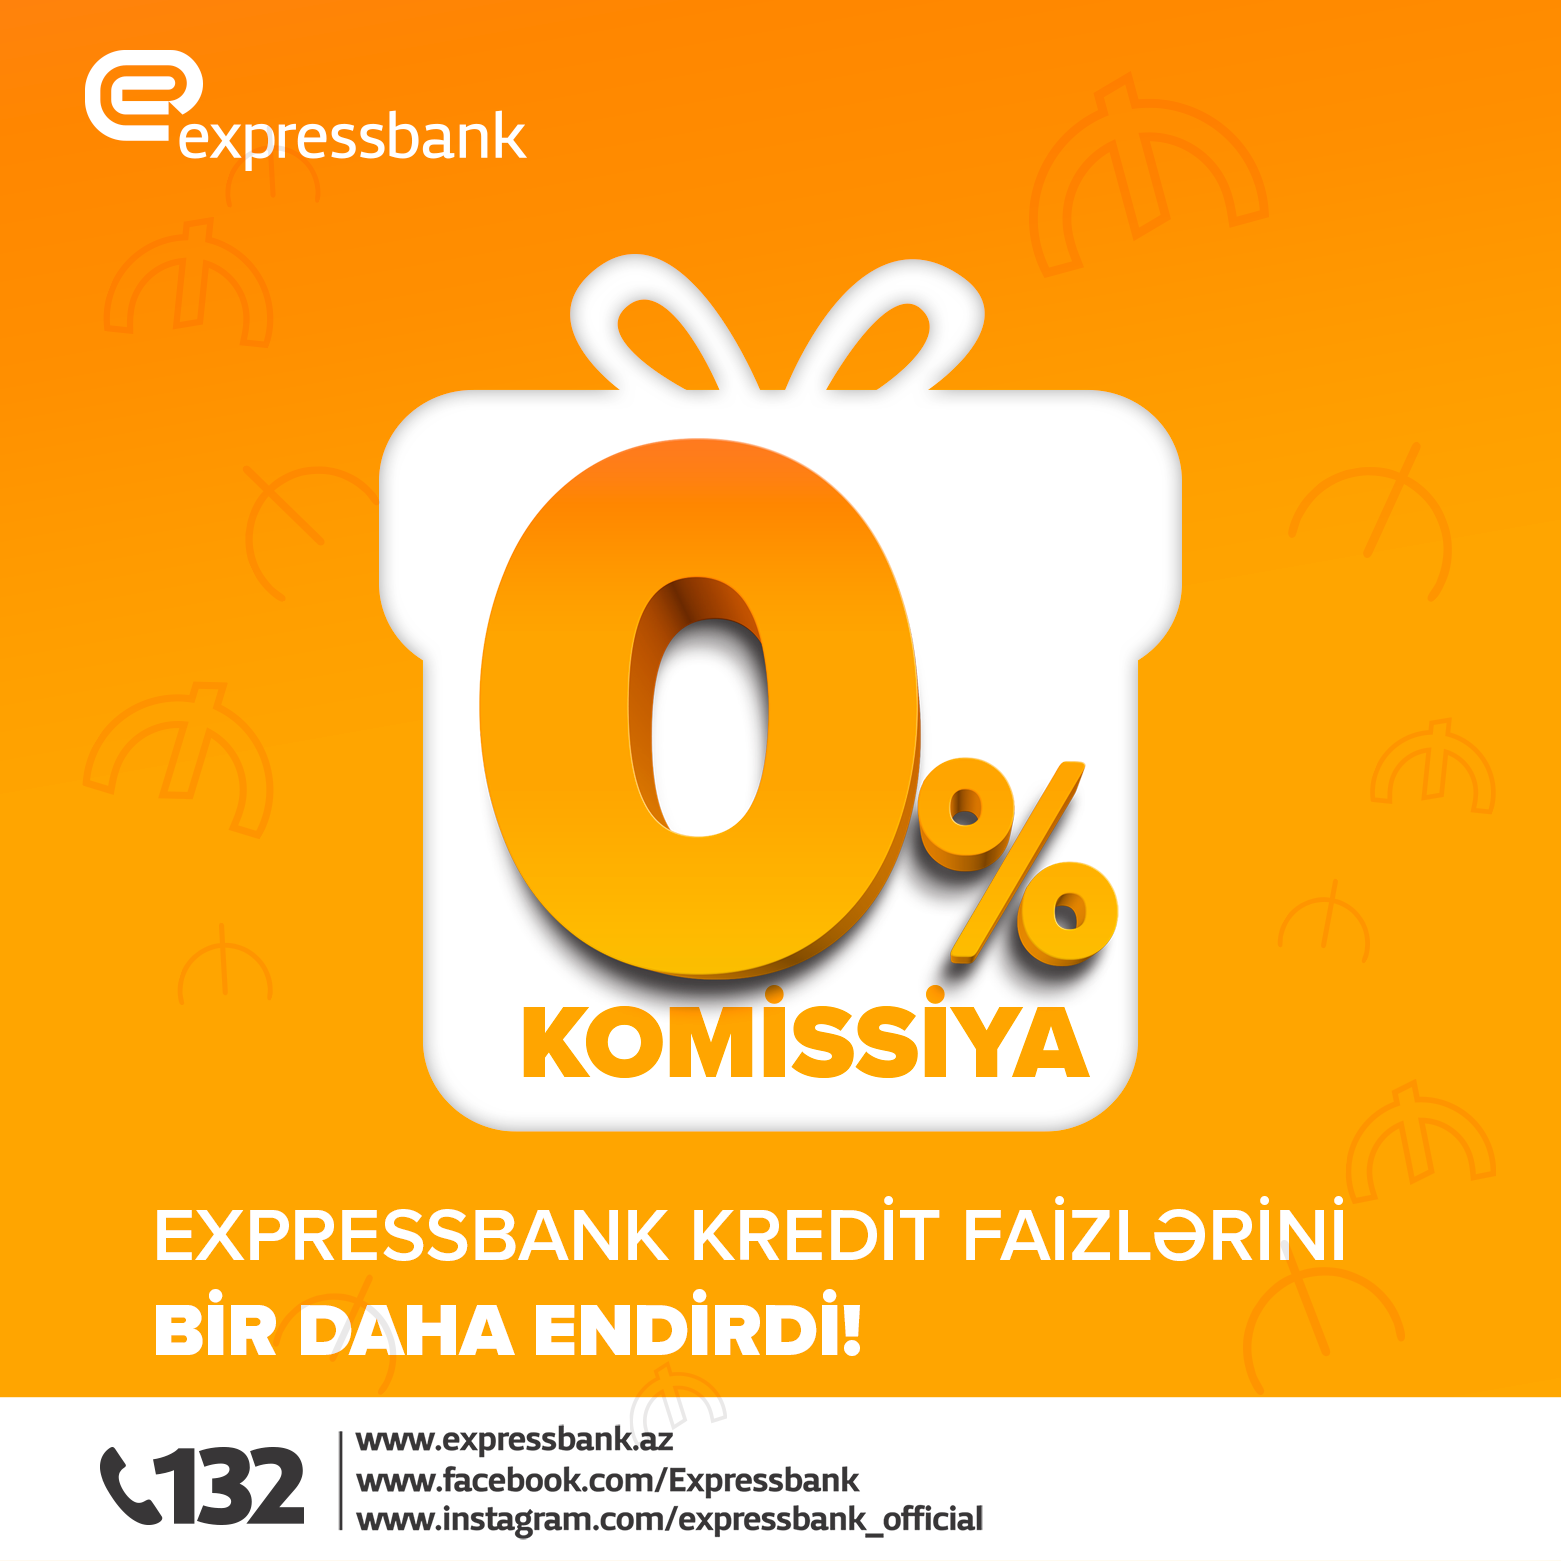 Expressbank-dan 0% komissiya ilə kredit kampaniyası!